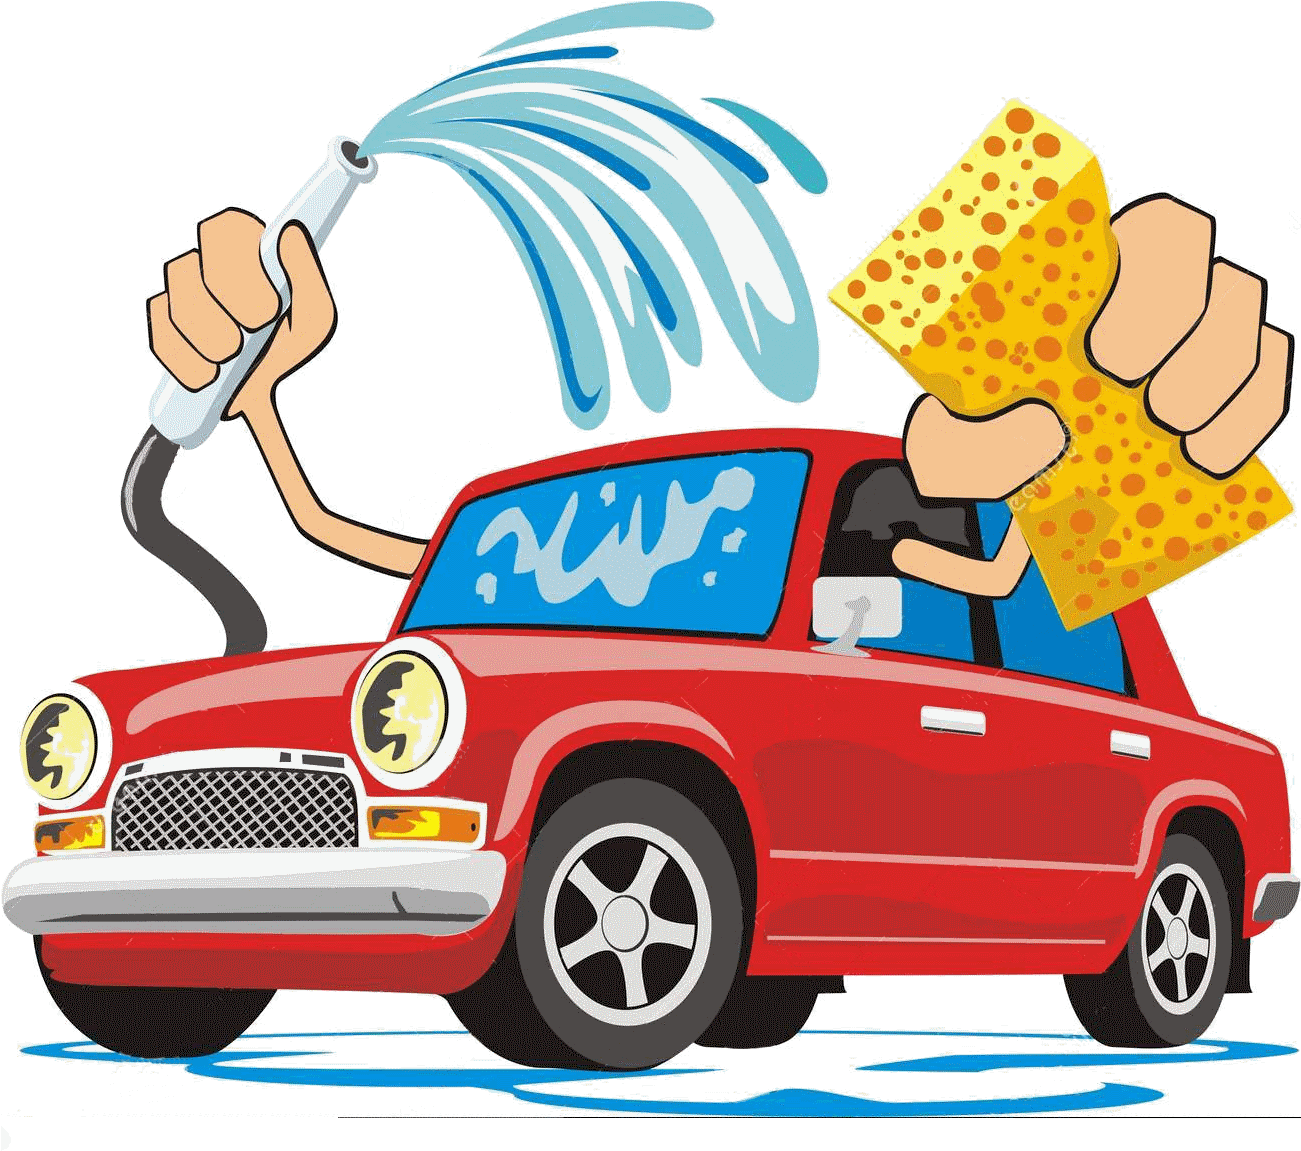 A Cartoon Of A Car Washing